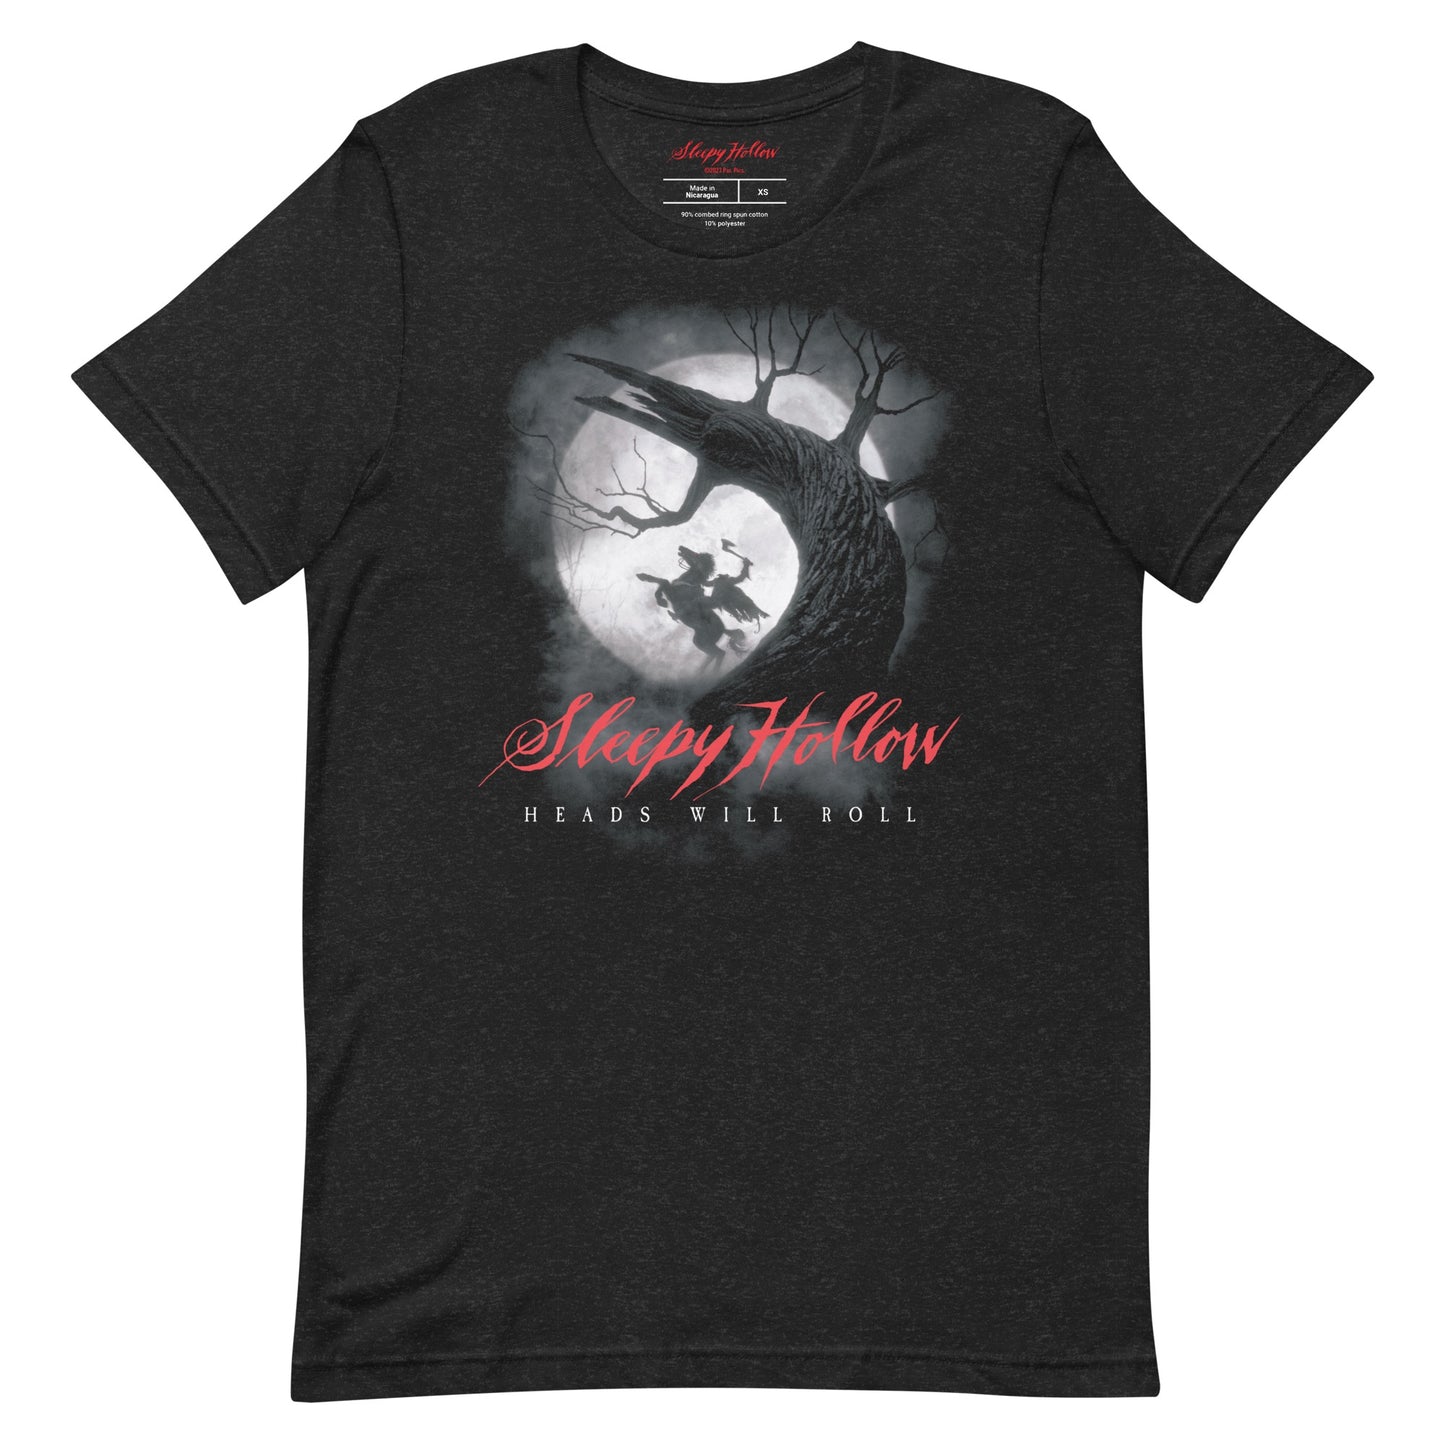 Sleepy Hollow T-Shirt "Heads Will Roll